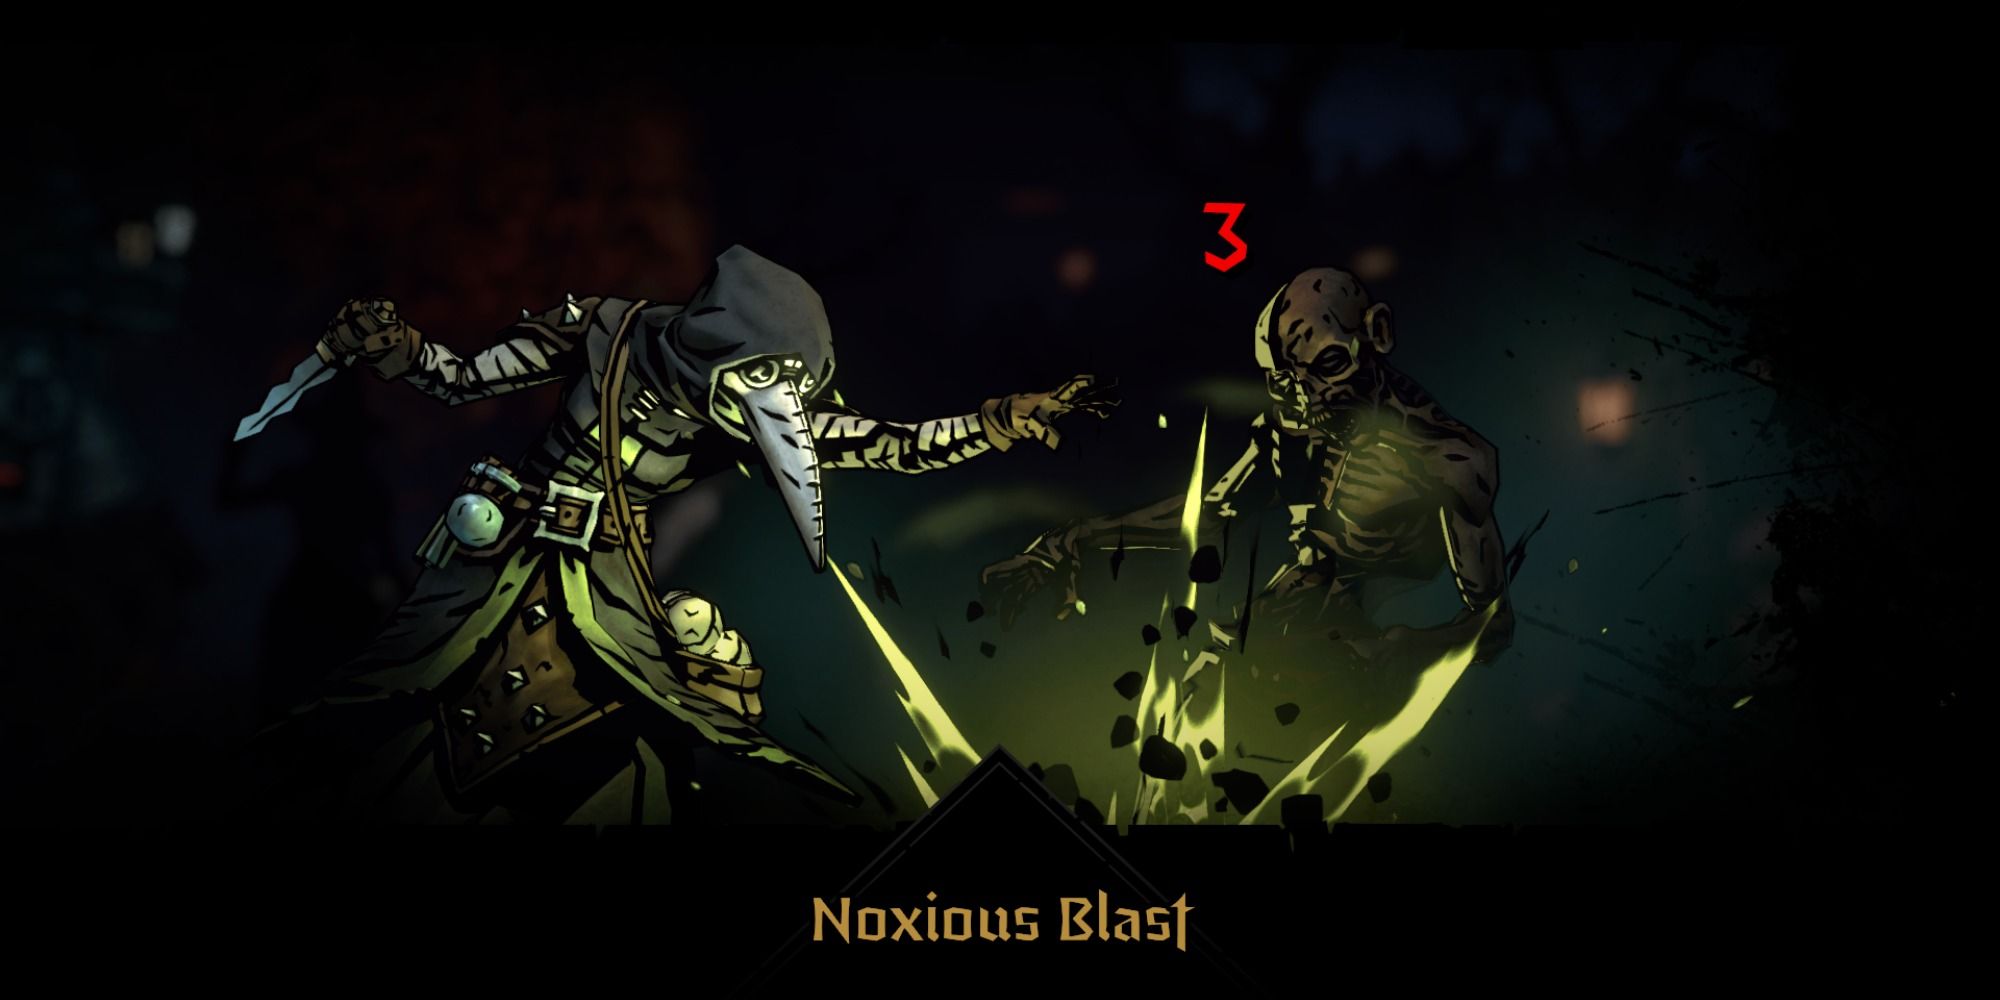 The Plague Doctor using Noxious Blast in Darkest Dungeon 2